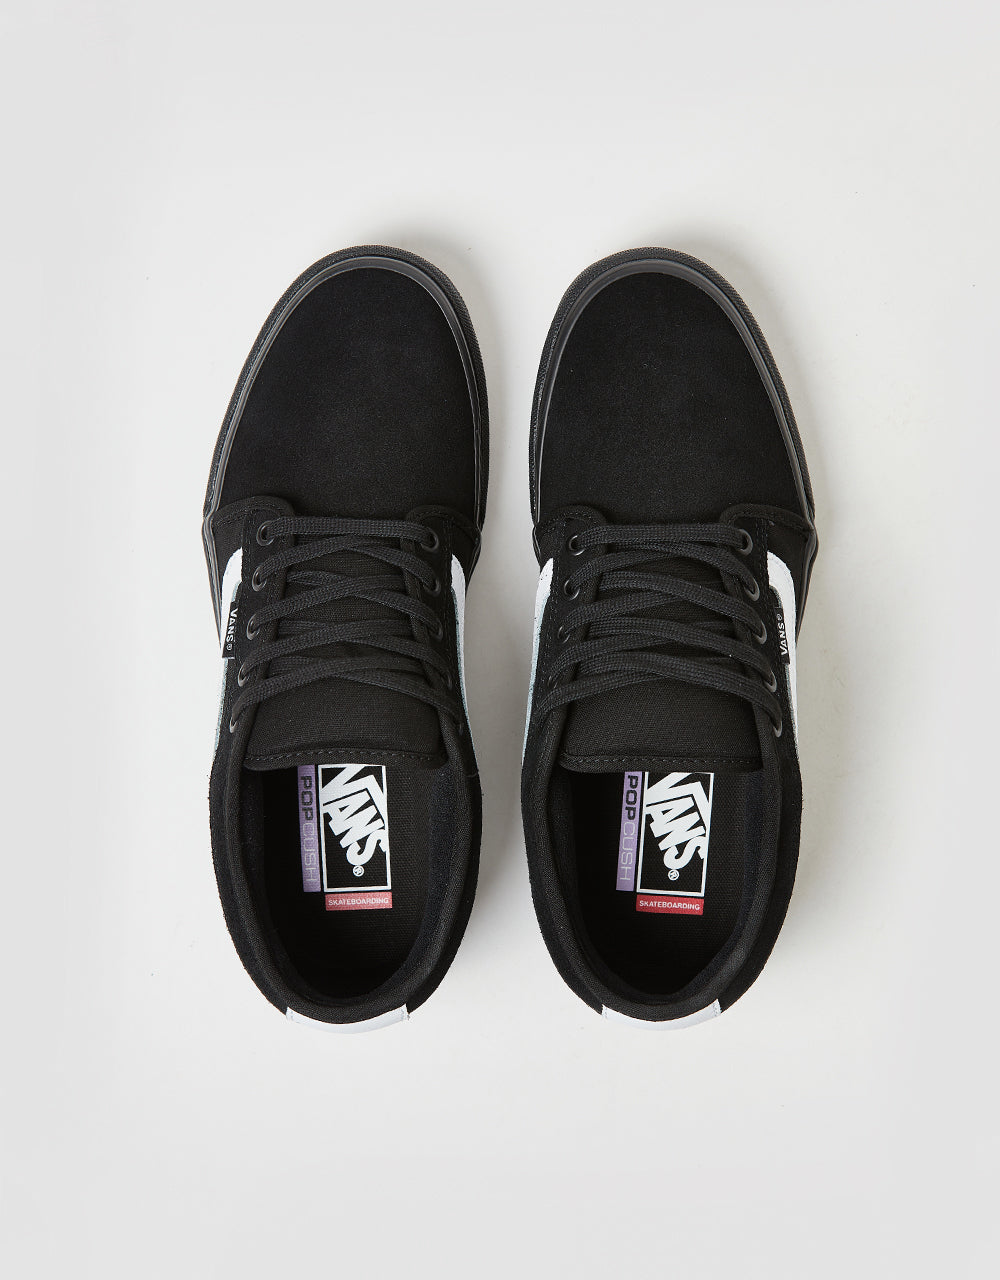 Vans Chukka Sidestripe Skate Shoes -  Black/Black/White